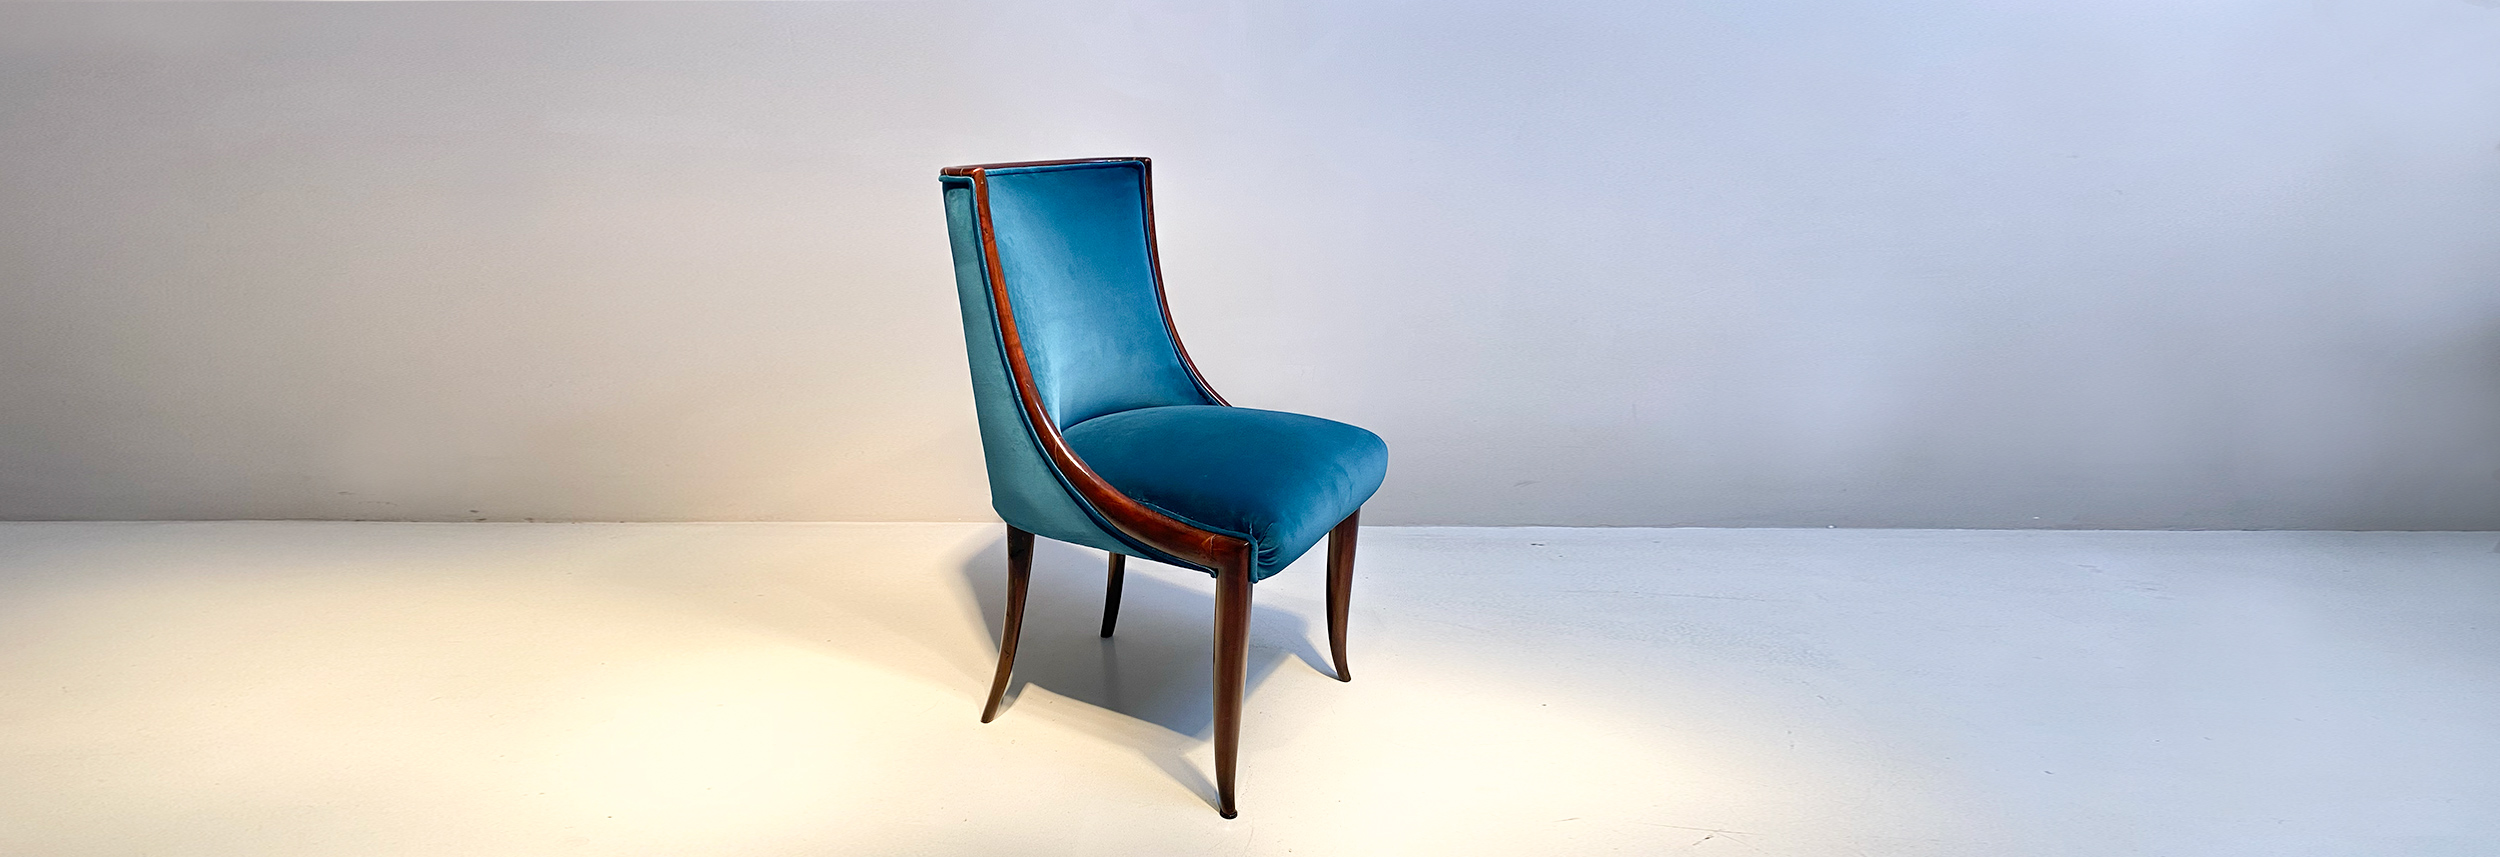 elegante sedia anni 50 design guglielmo ulrich 040 SE(2)